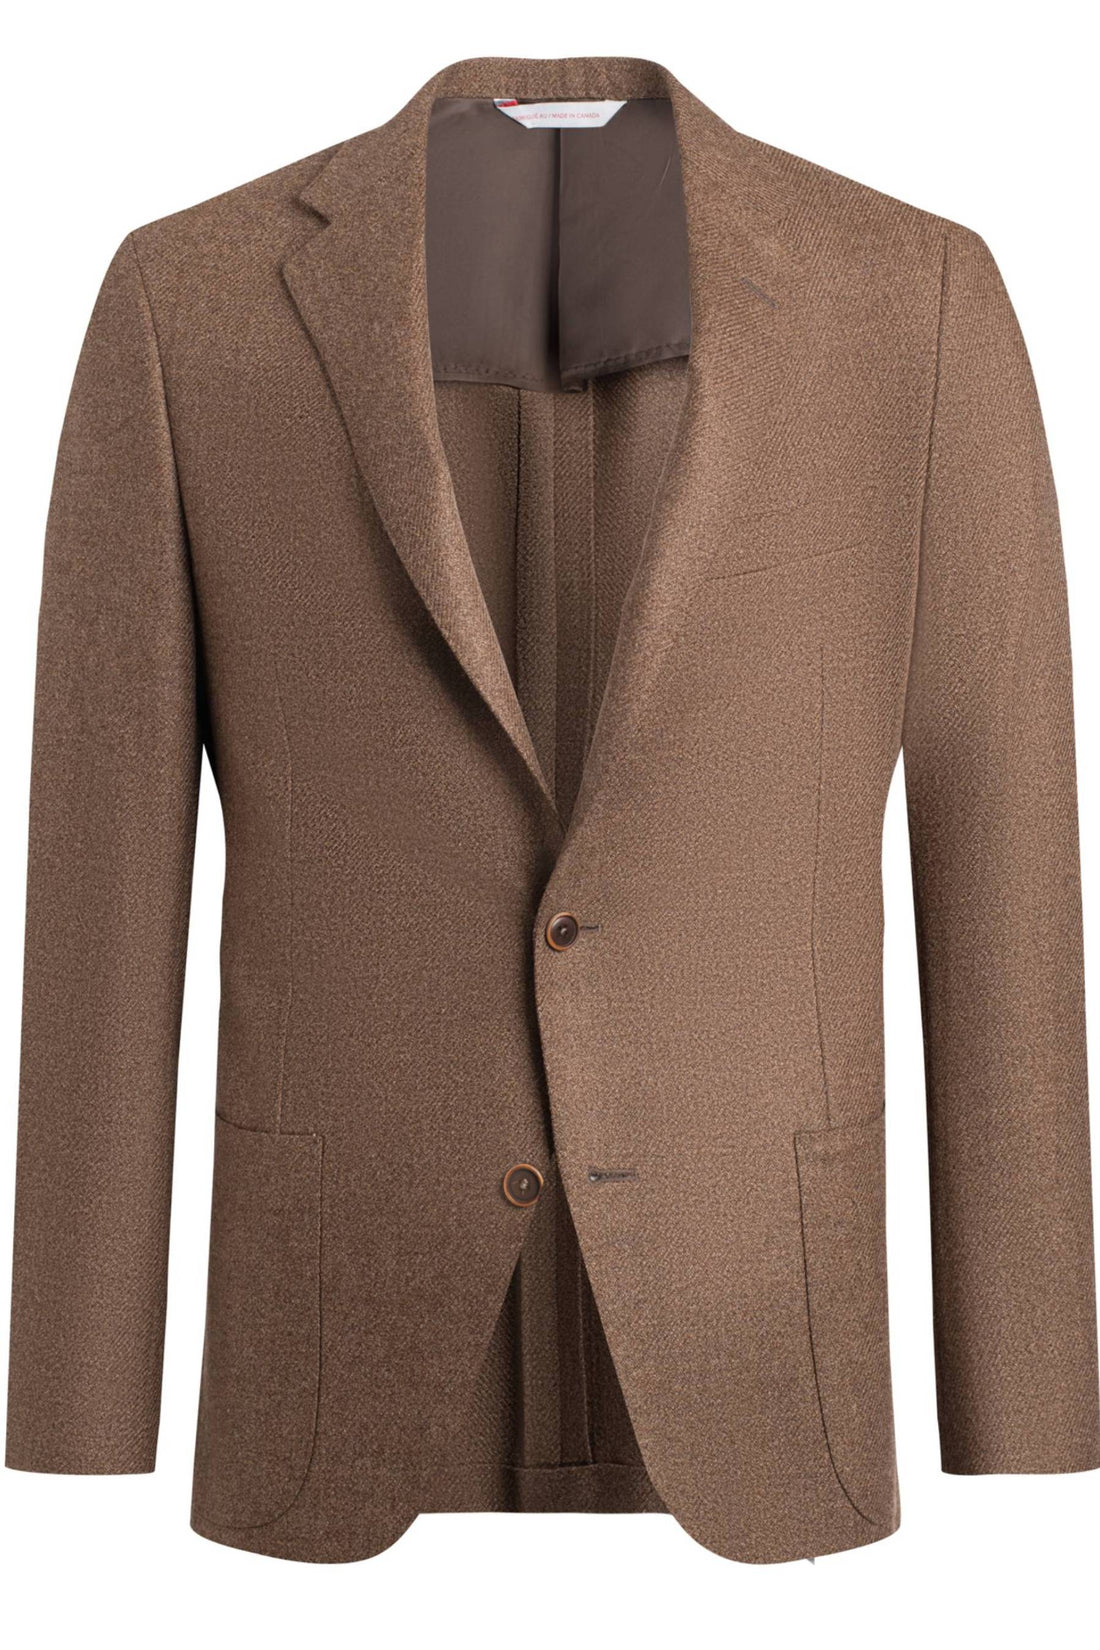 Samuelsohn Brown Wool Silk Capolovaro Tweed Jacket